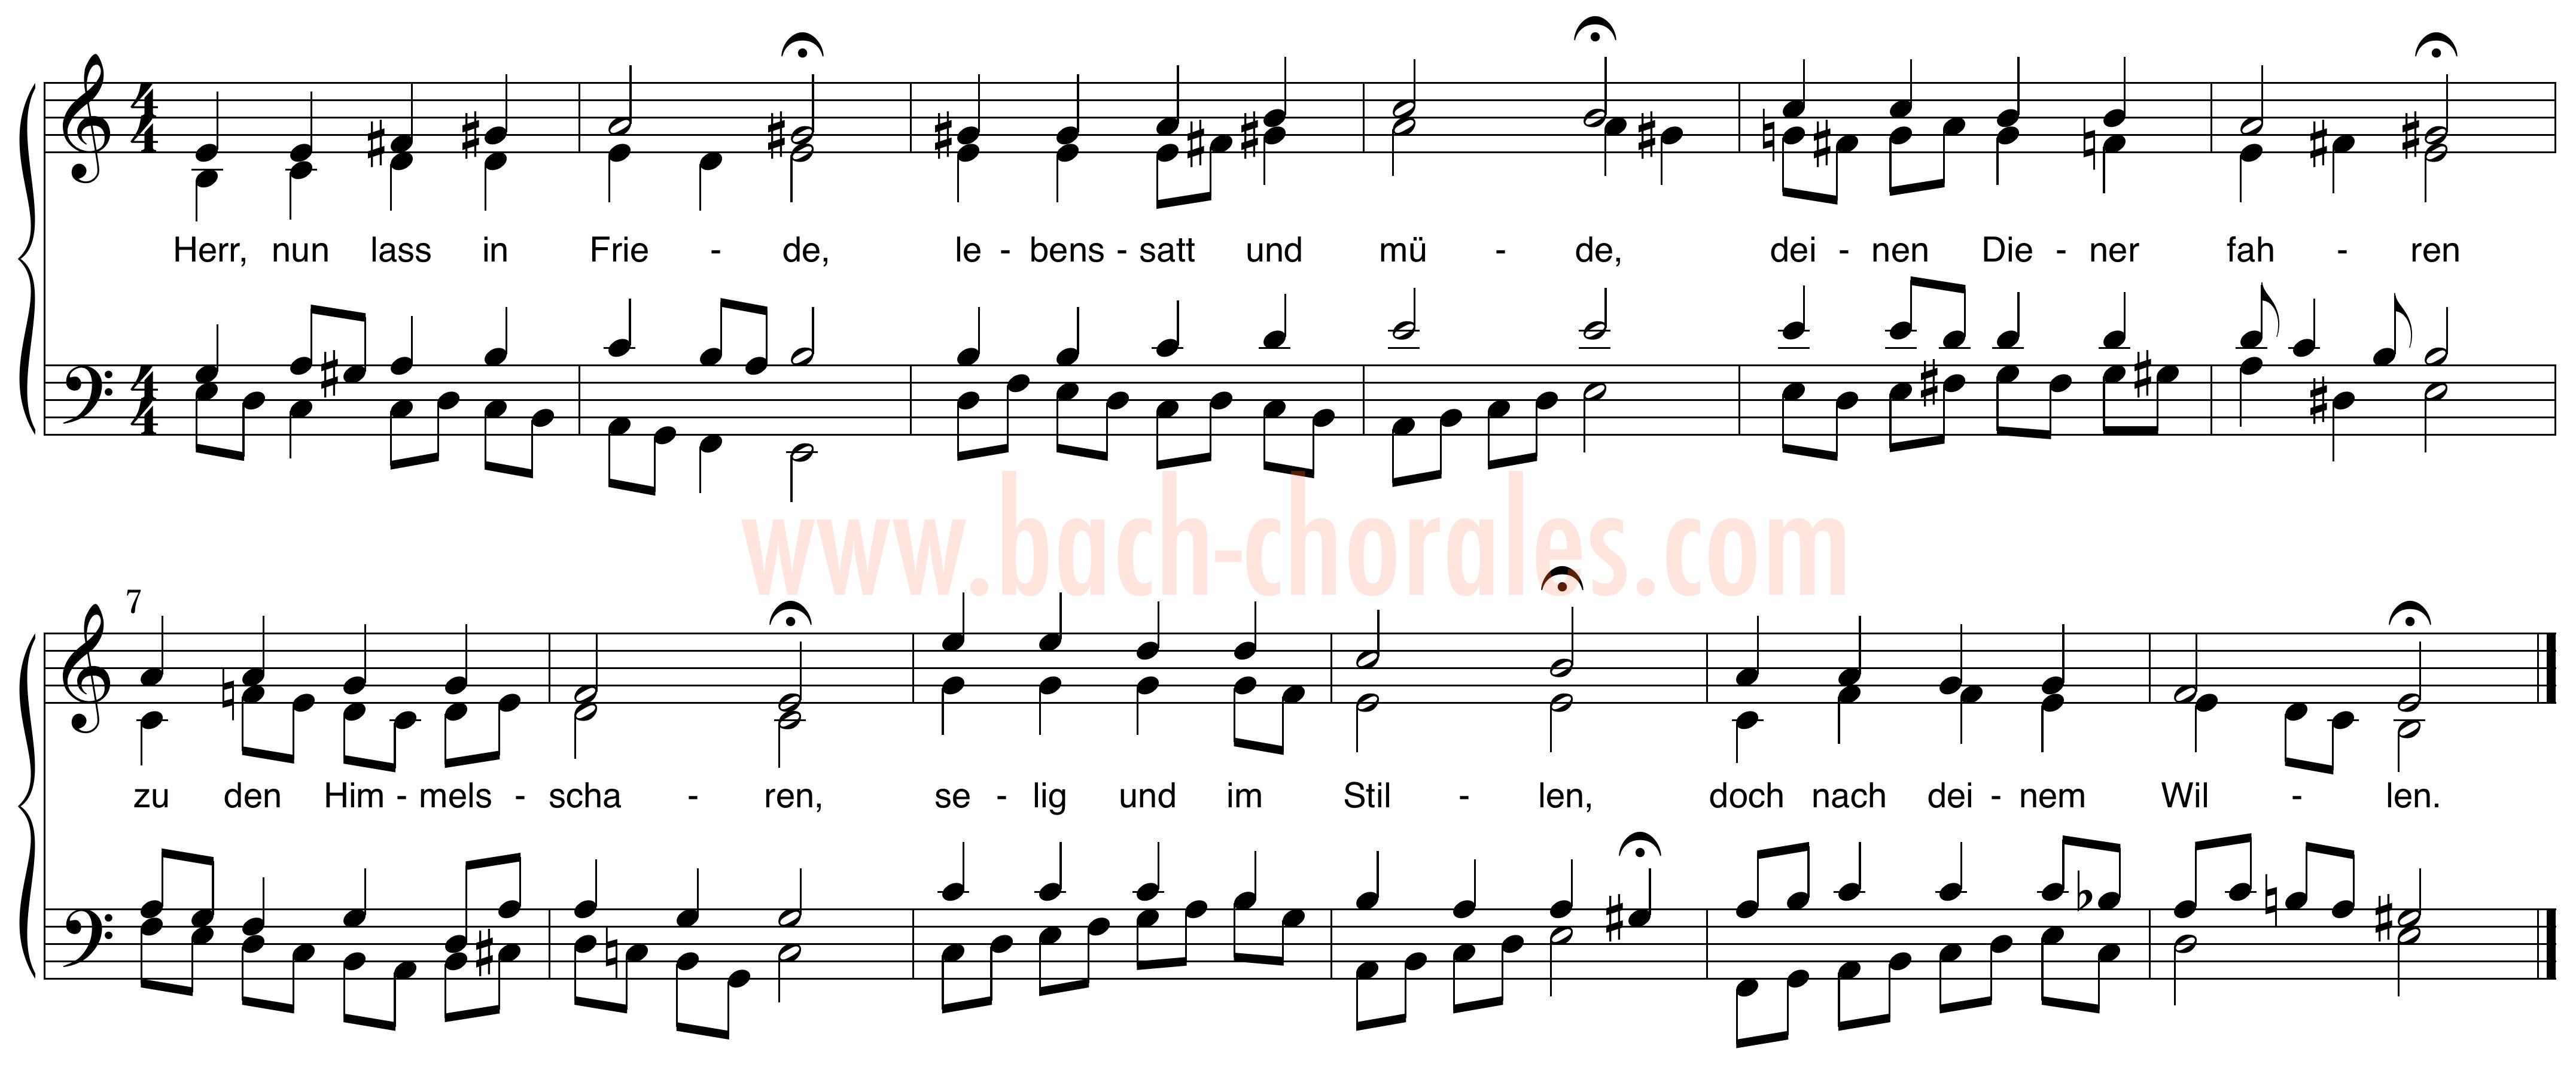 notenbeeld BWV 337 op https://www.bach-chorales.com/